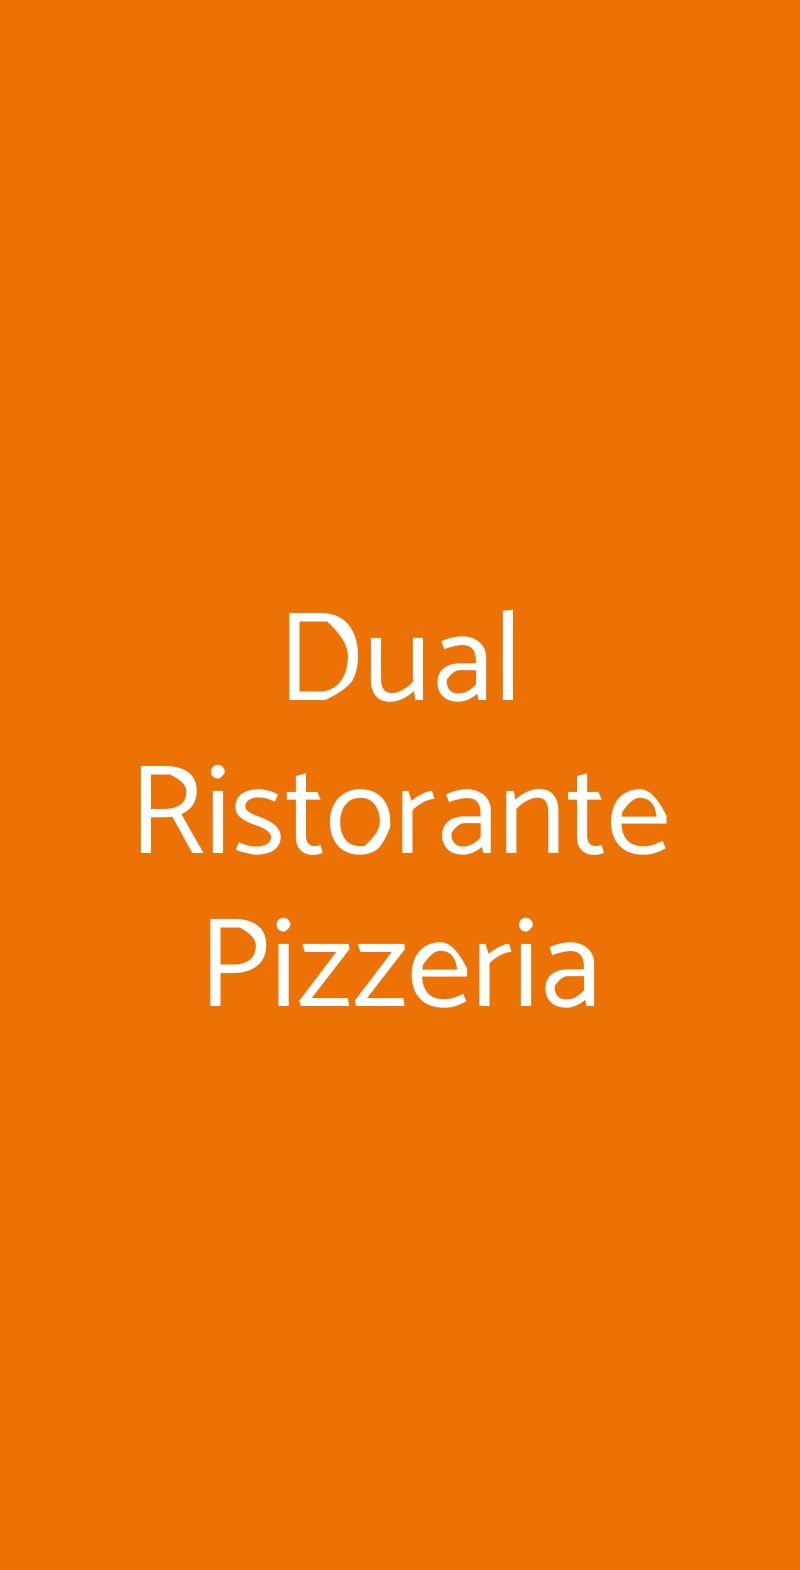 Dual Ristorante Pizzeria Torino menù 1 pagina